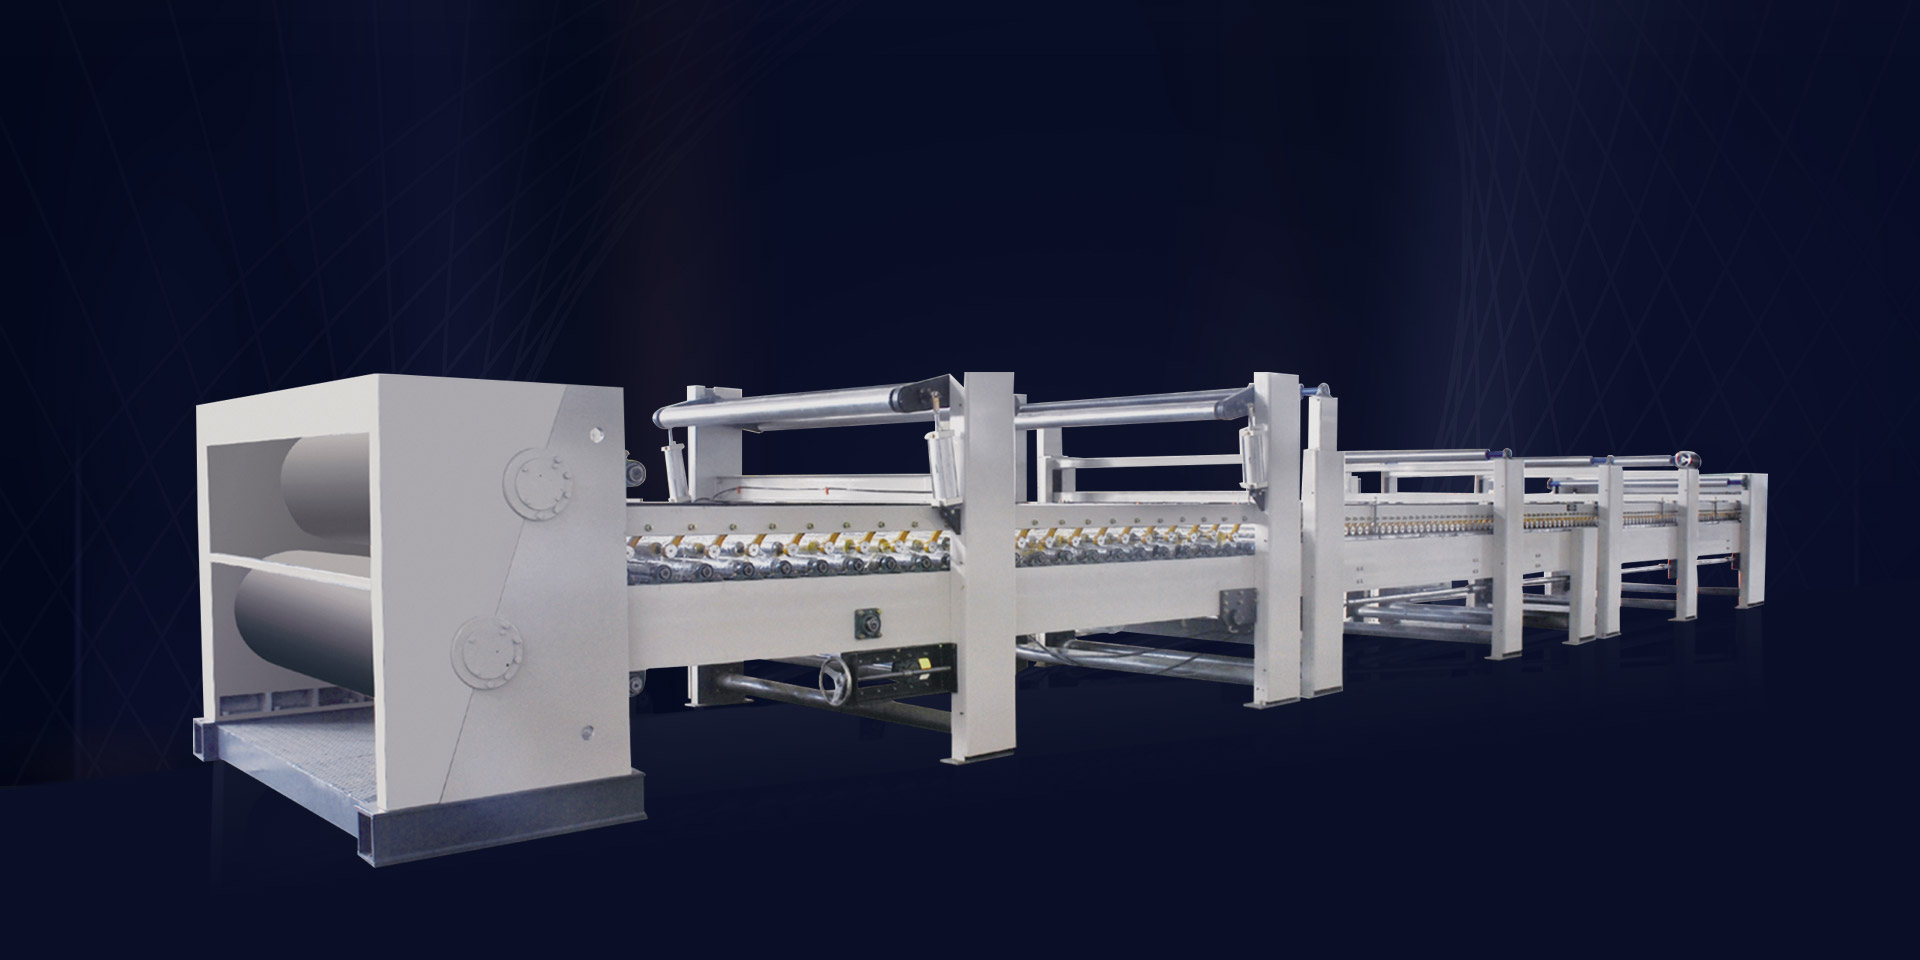 瓦楞紙板機械:瓦楞紙打印機如何操作?